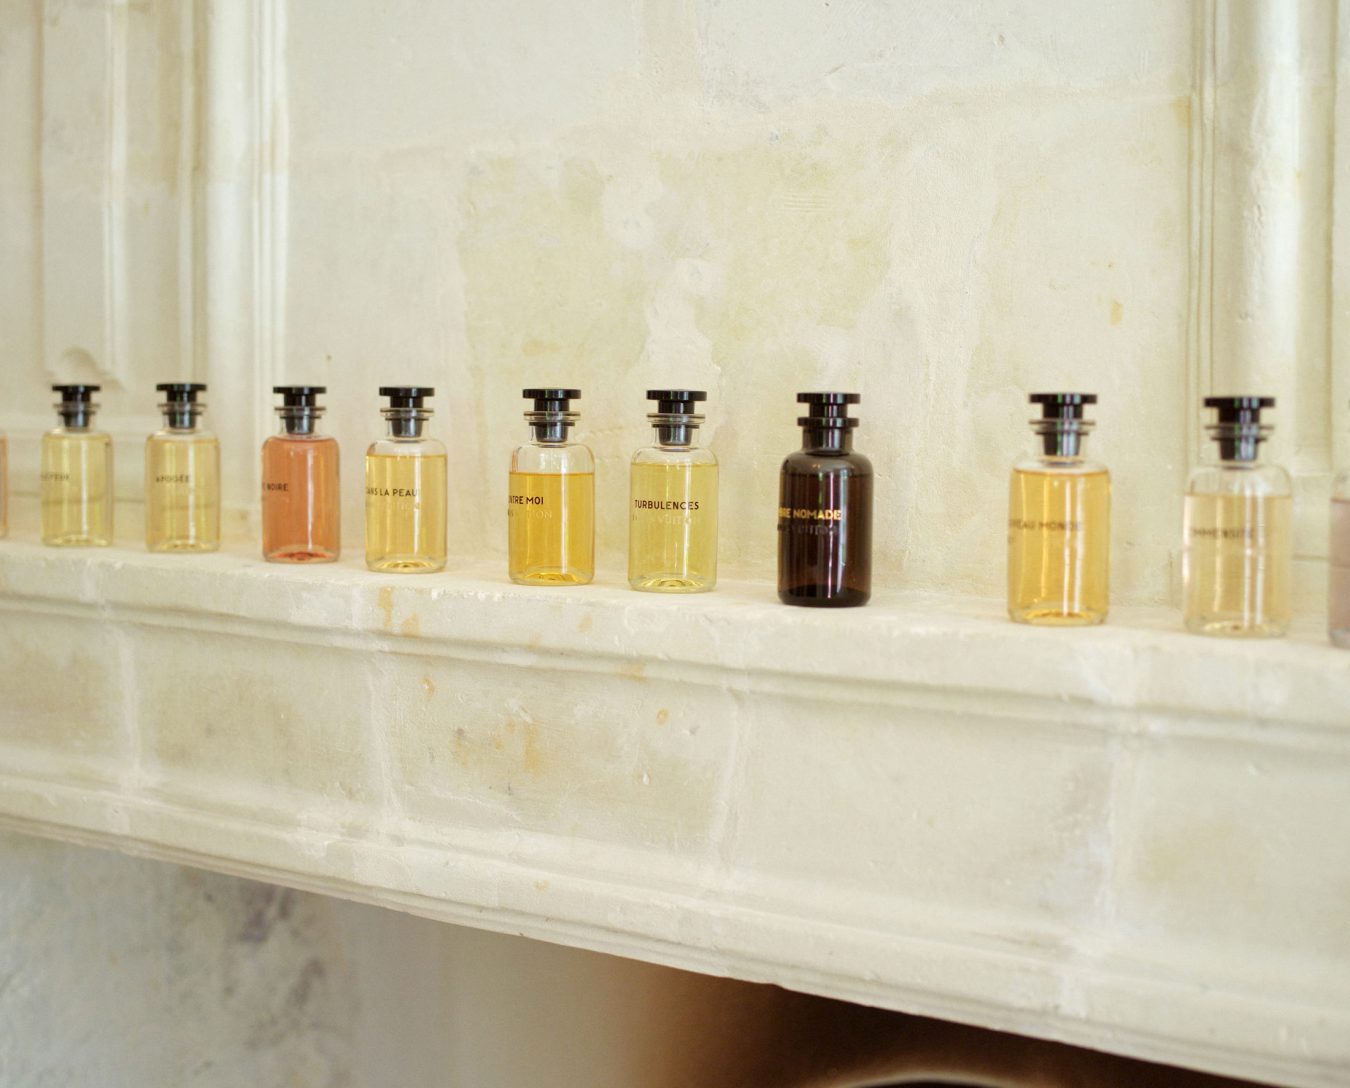 Louis Vuitton - Nouveau Monde for Man - A+ Louis Vuitton Premium Perfume  Oils